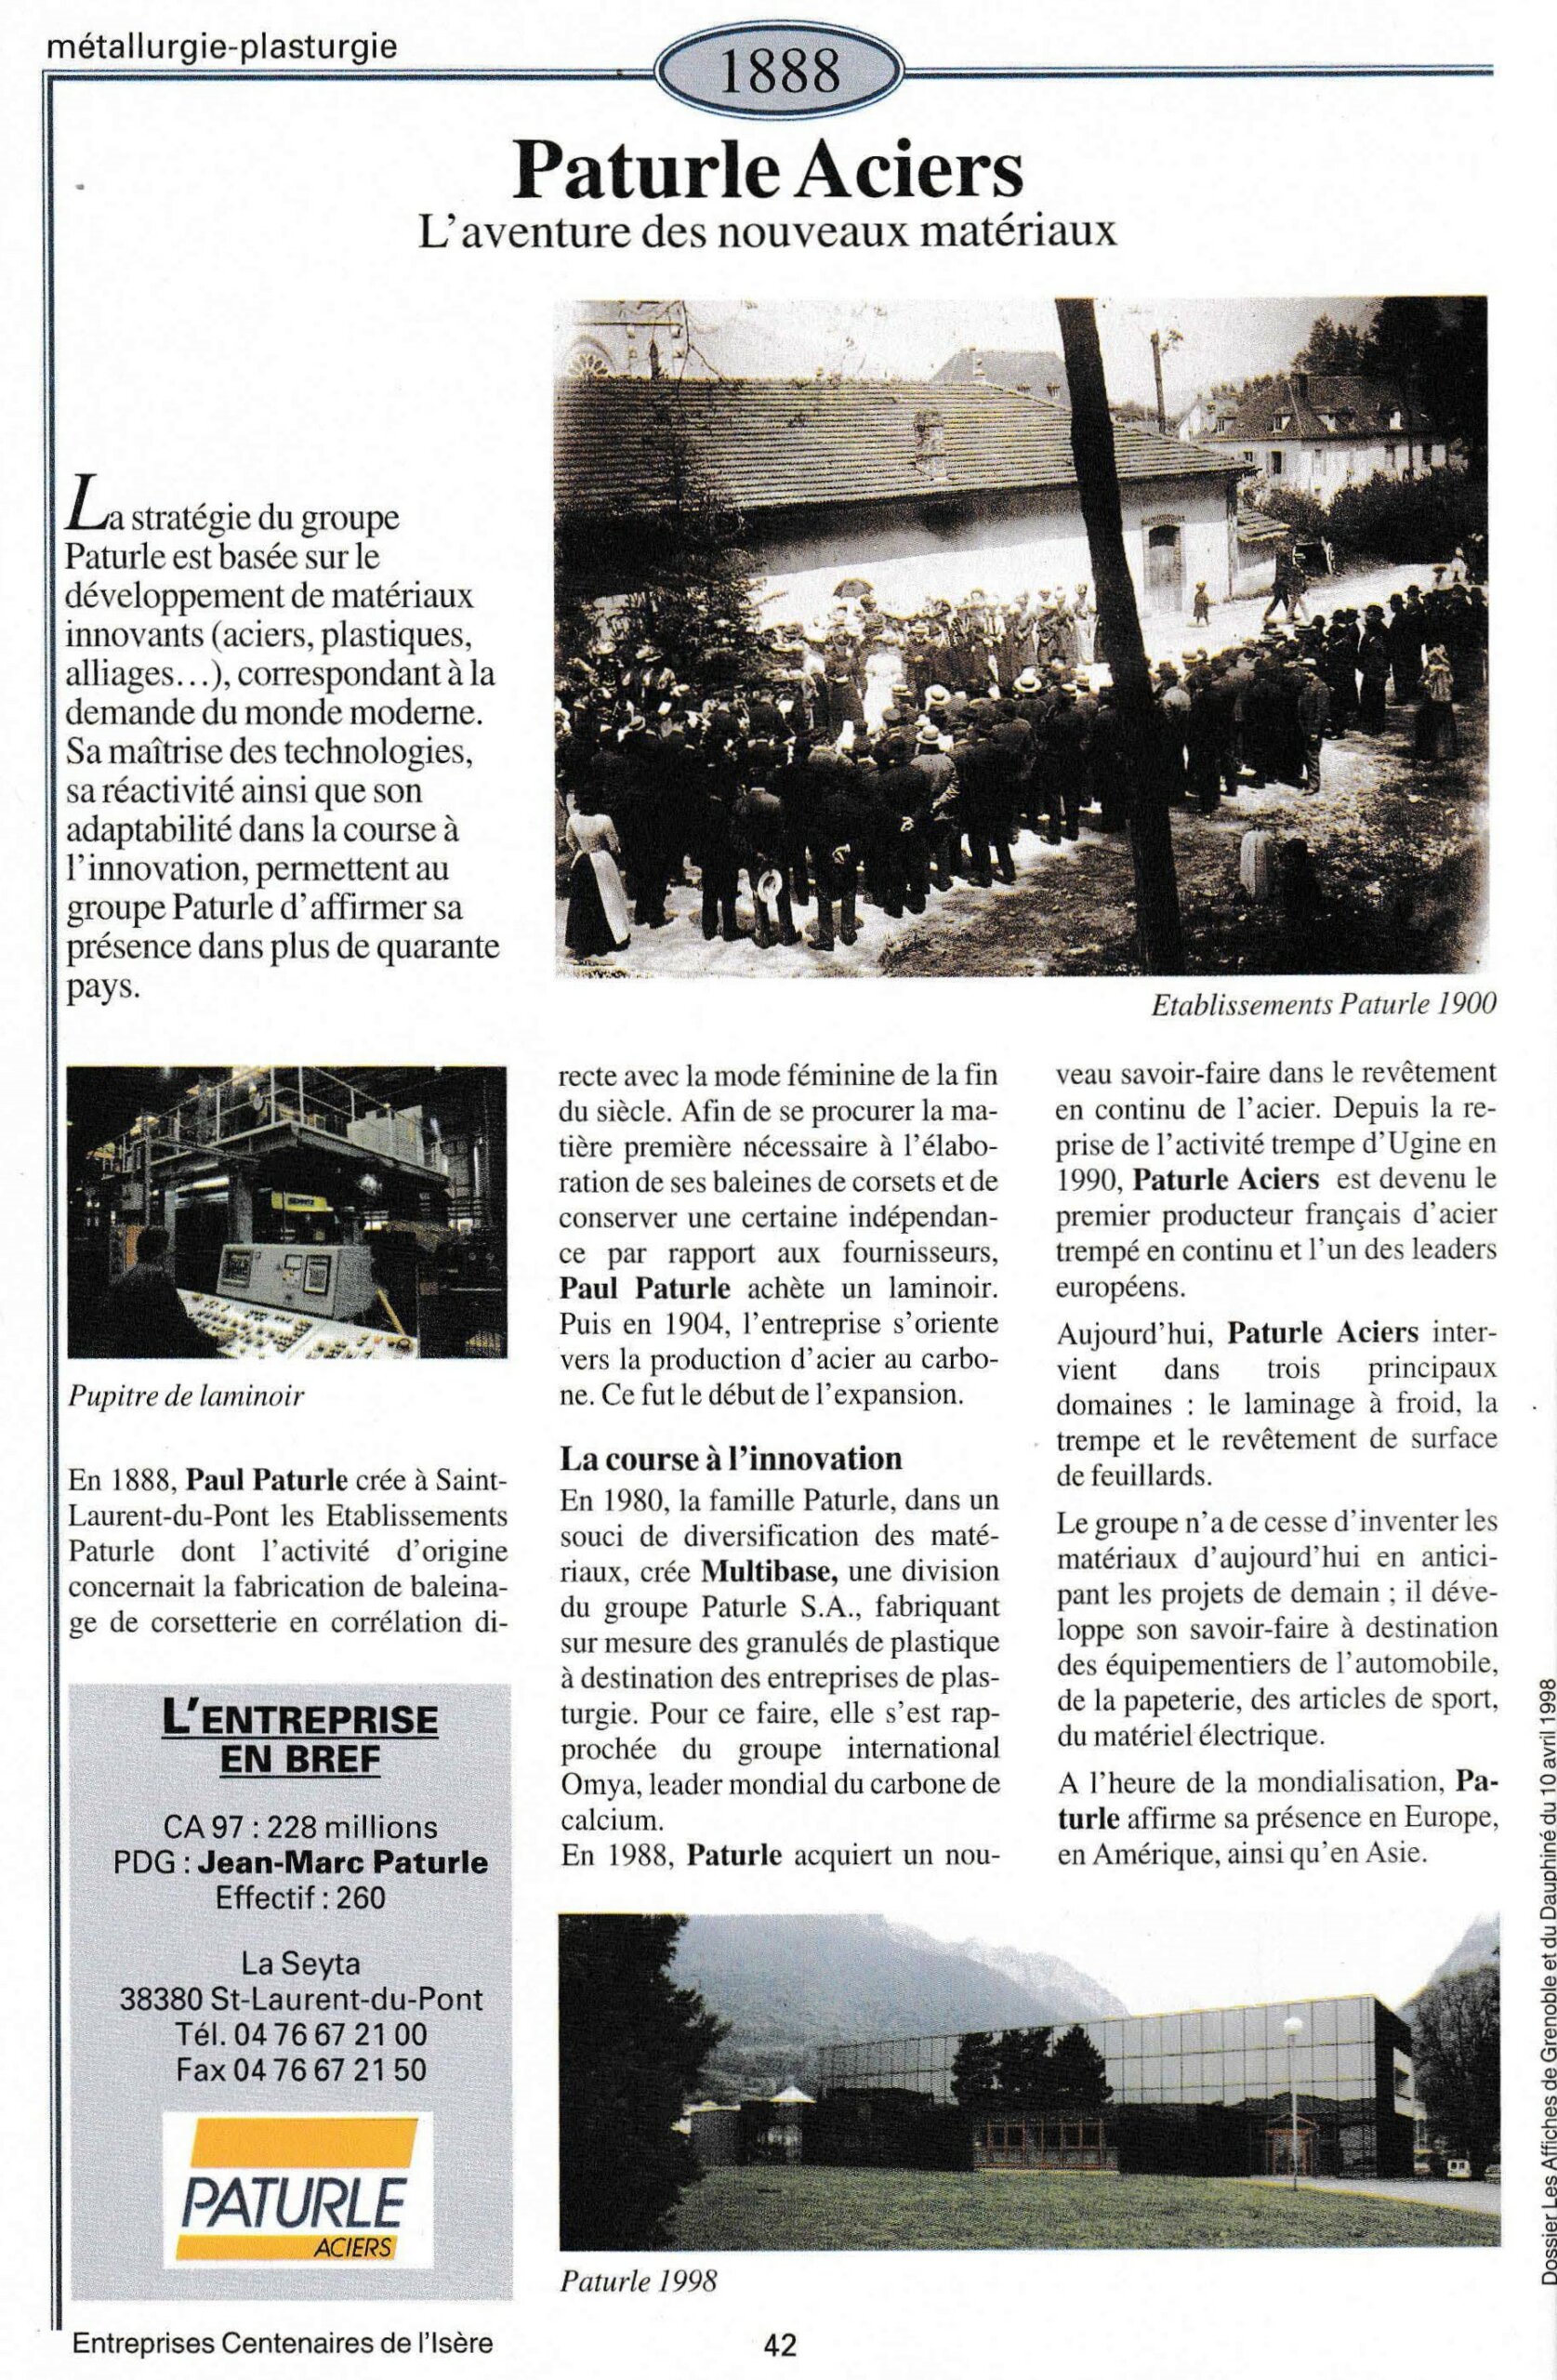 Paturle Aciers - fiche du supplément "Entreprises centenaires en Isère", publié par Les affiches de Grenoble et du Dauphiné, juin 1998.